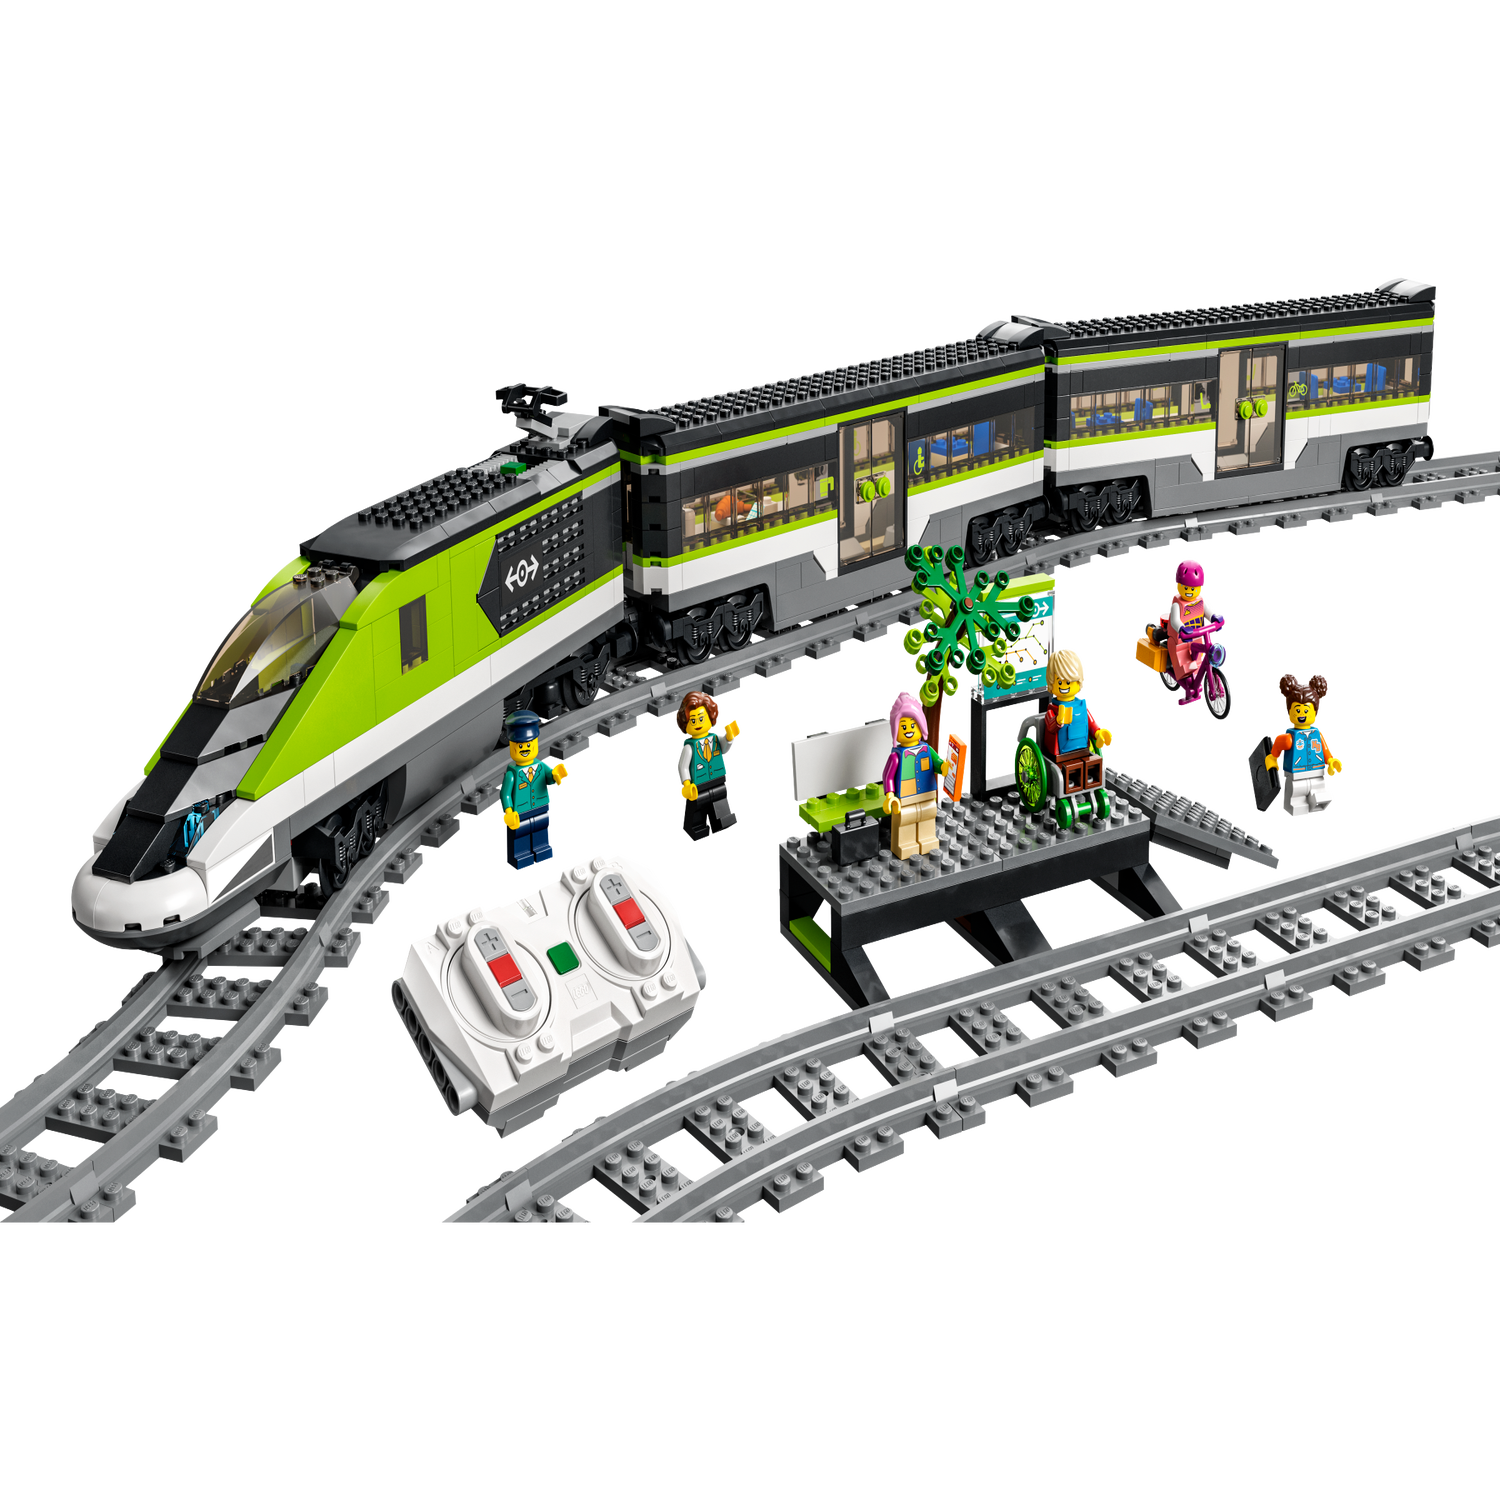 Lego City Le train de voyageurs express 60337